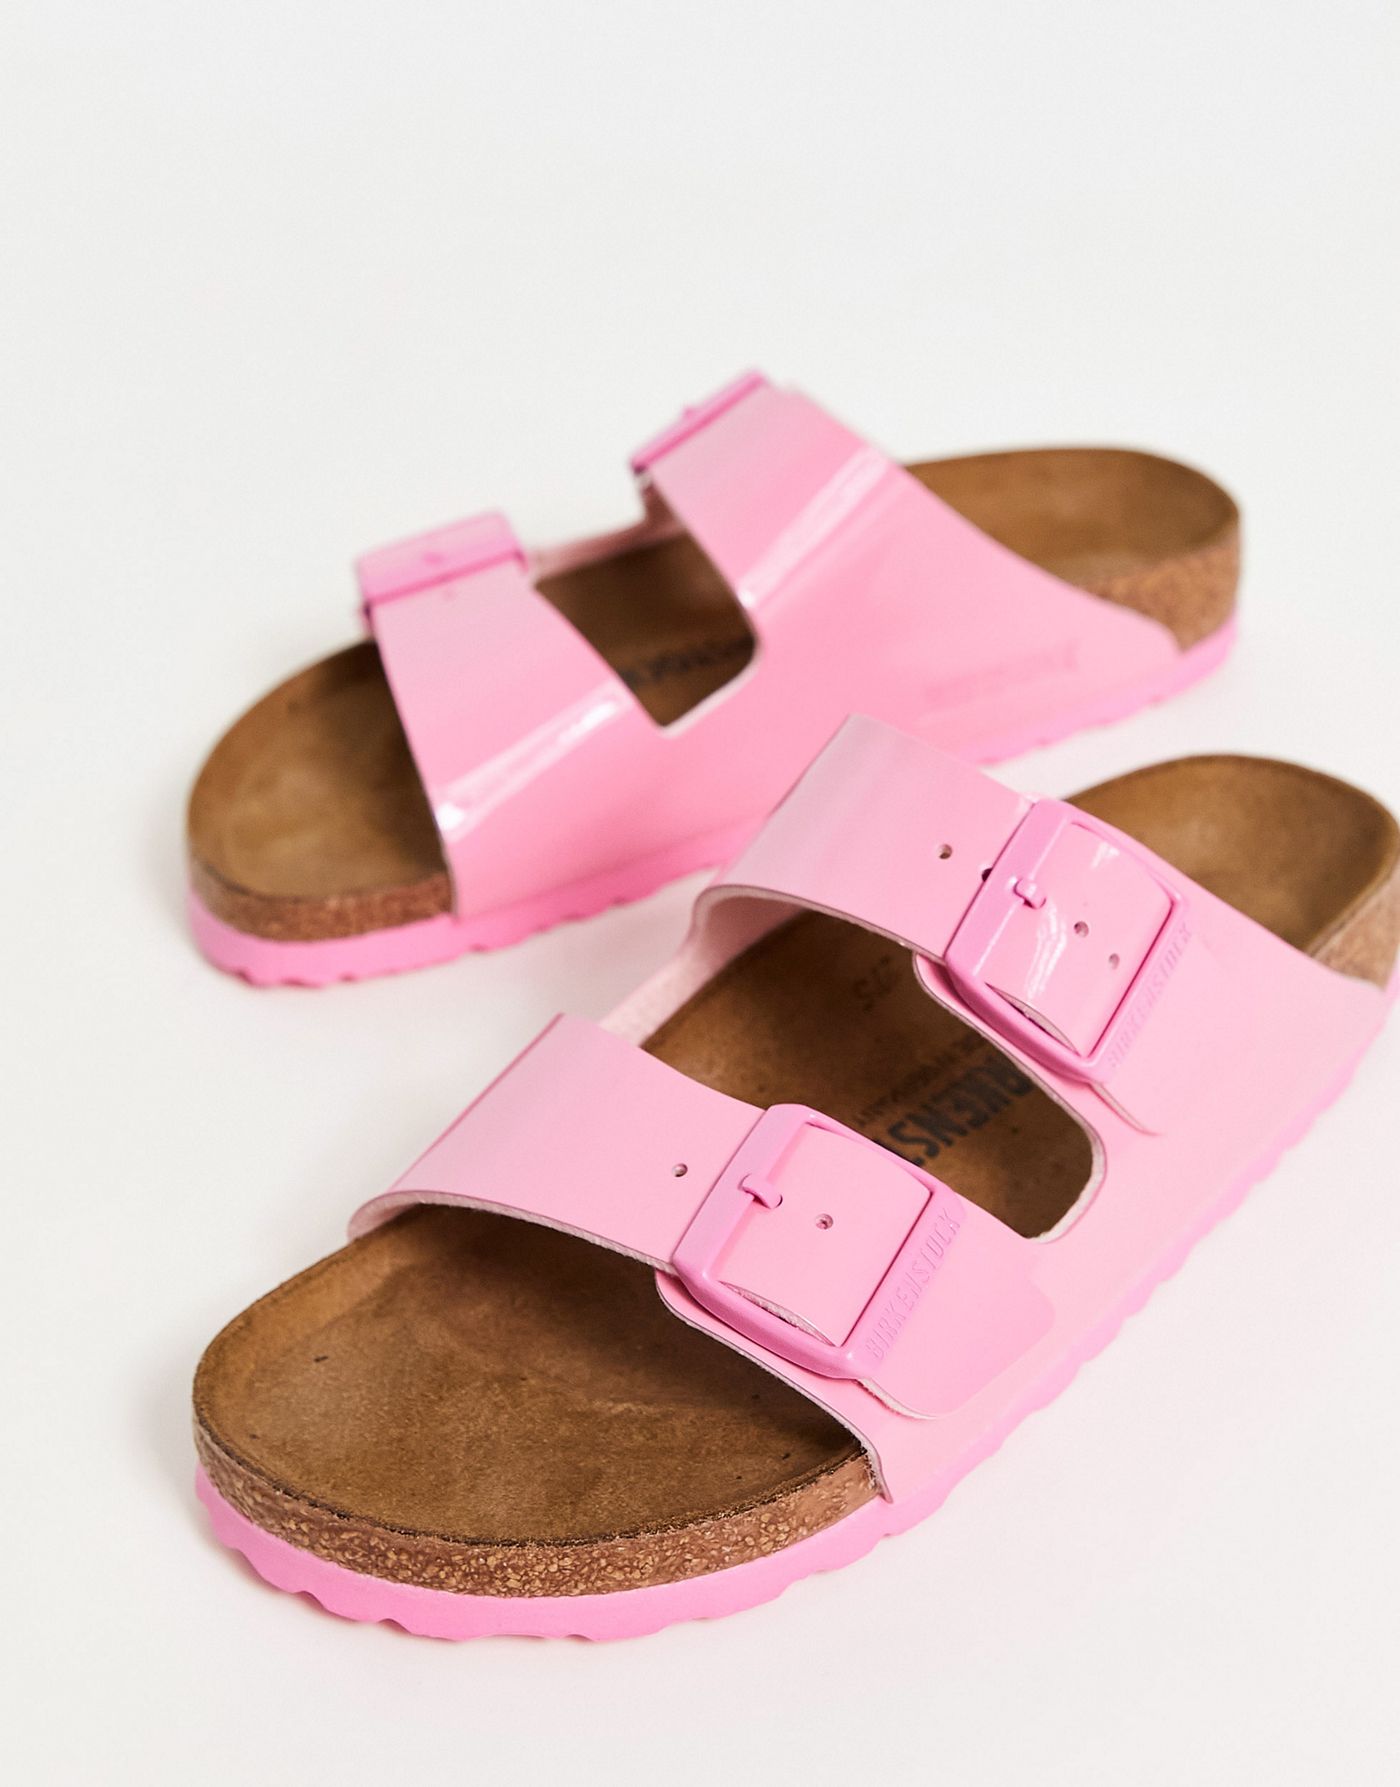 Birkenstock Arizona Birko-Flor sandals in candy pink